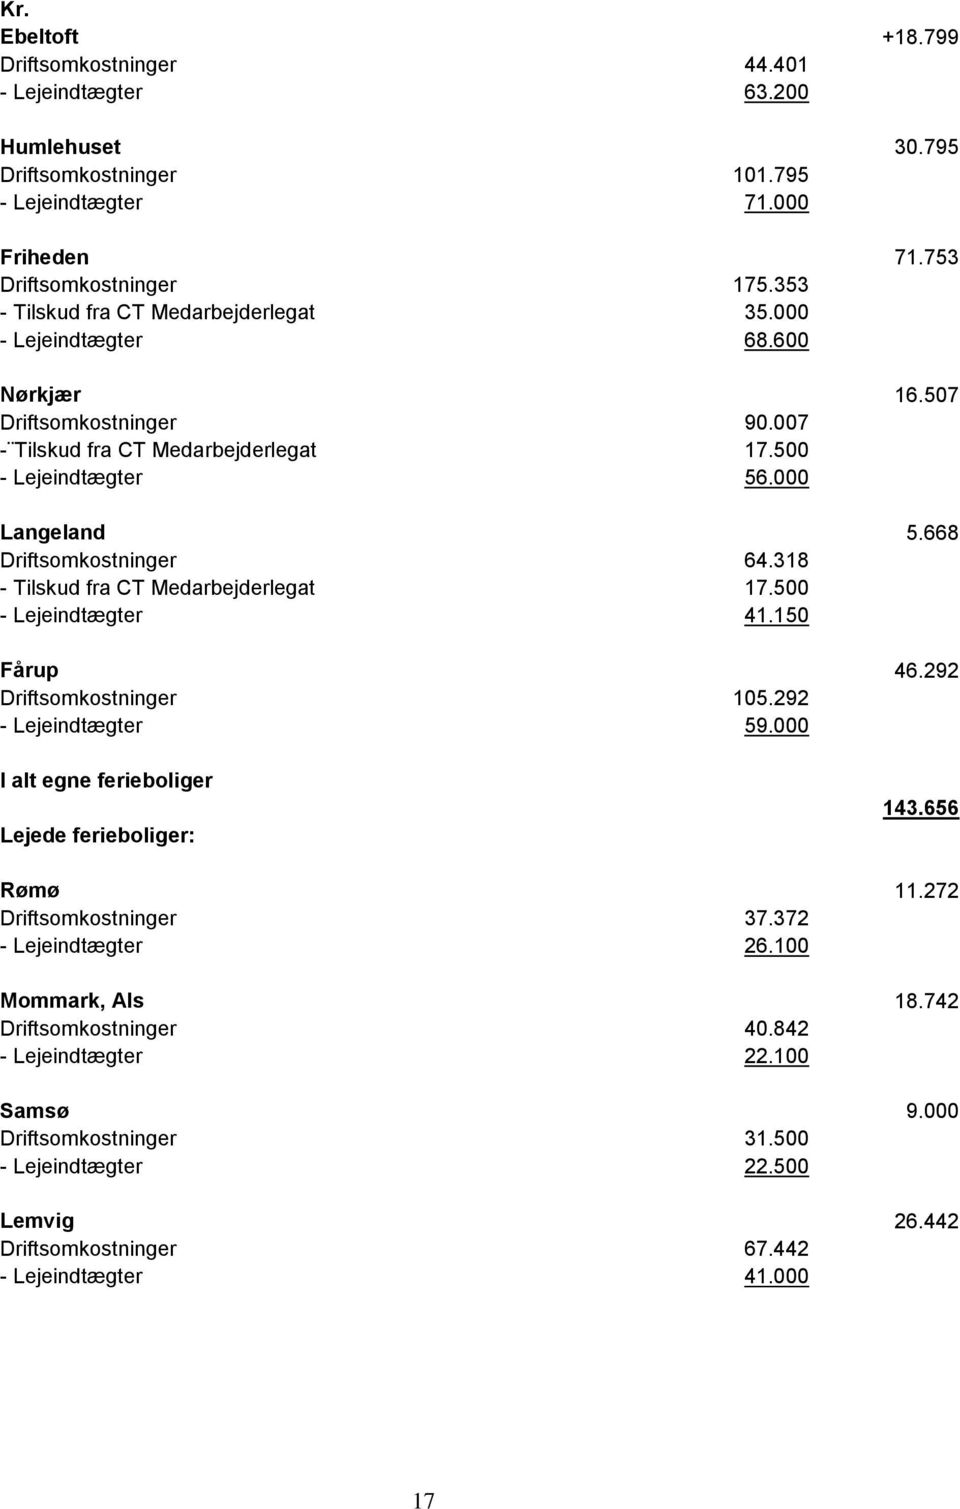 000 Langeland 5.668 Driftsomkostninger 64.318 - Tilskud fra CT Medarbejderlegat 17.500 - Lejeindtægter 41.150 Fårup 46.292 Driftsomkostninger 105.292 - Lejeindtægter 59.